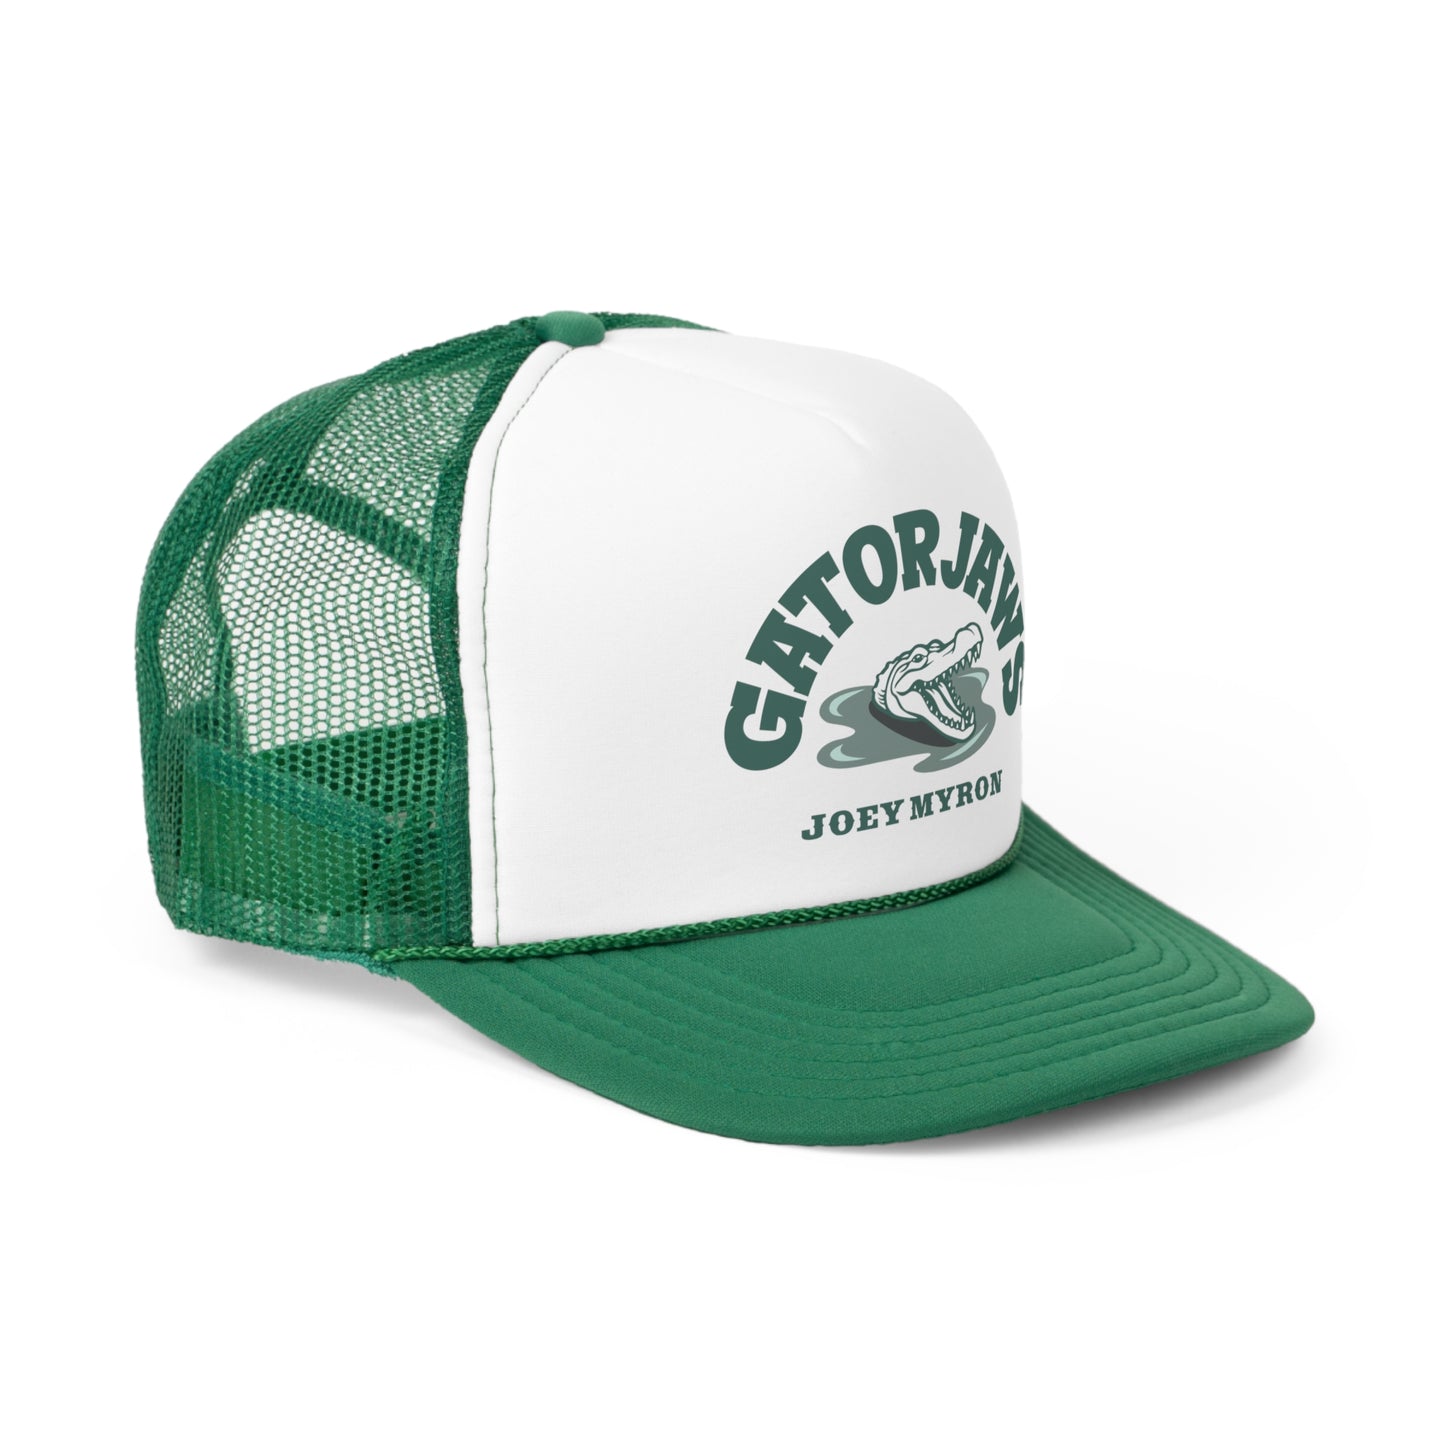 Gator Jaws Trucker Hat